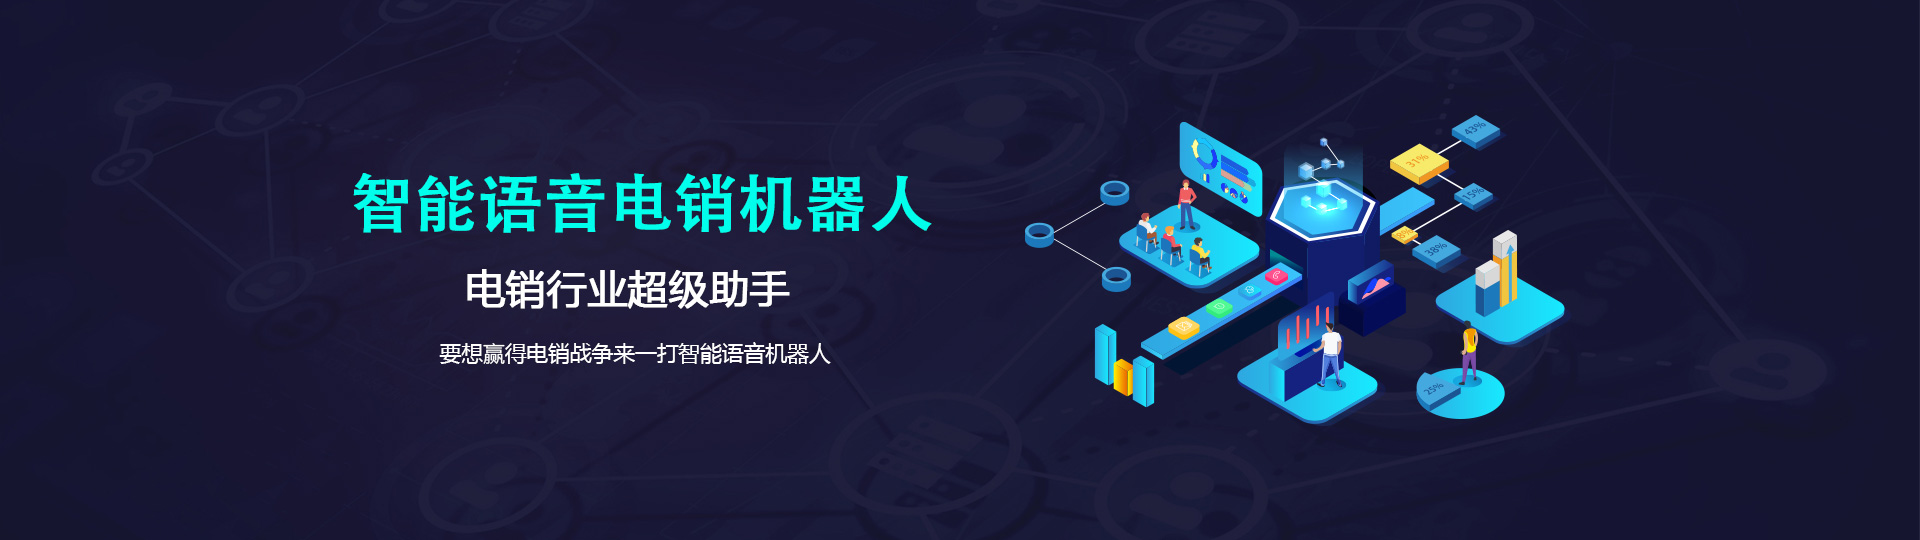 广州增城区AI智能外呼机器人